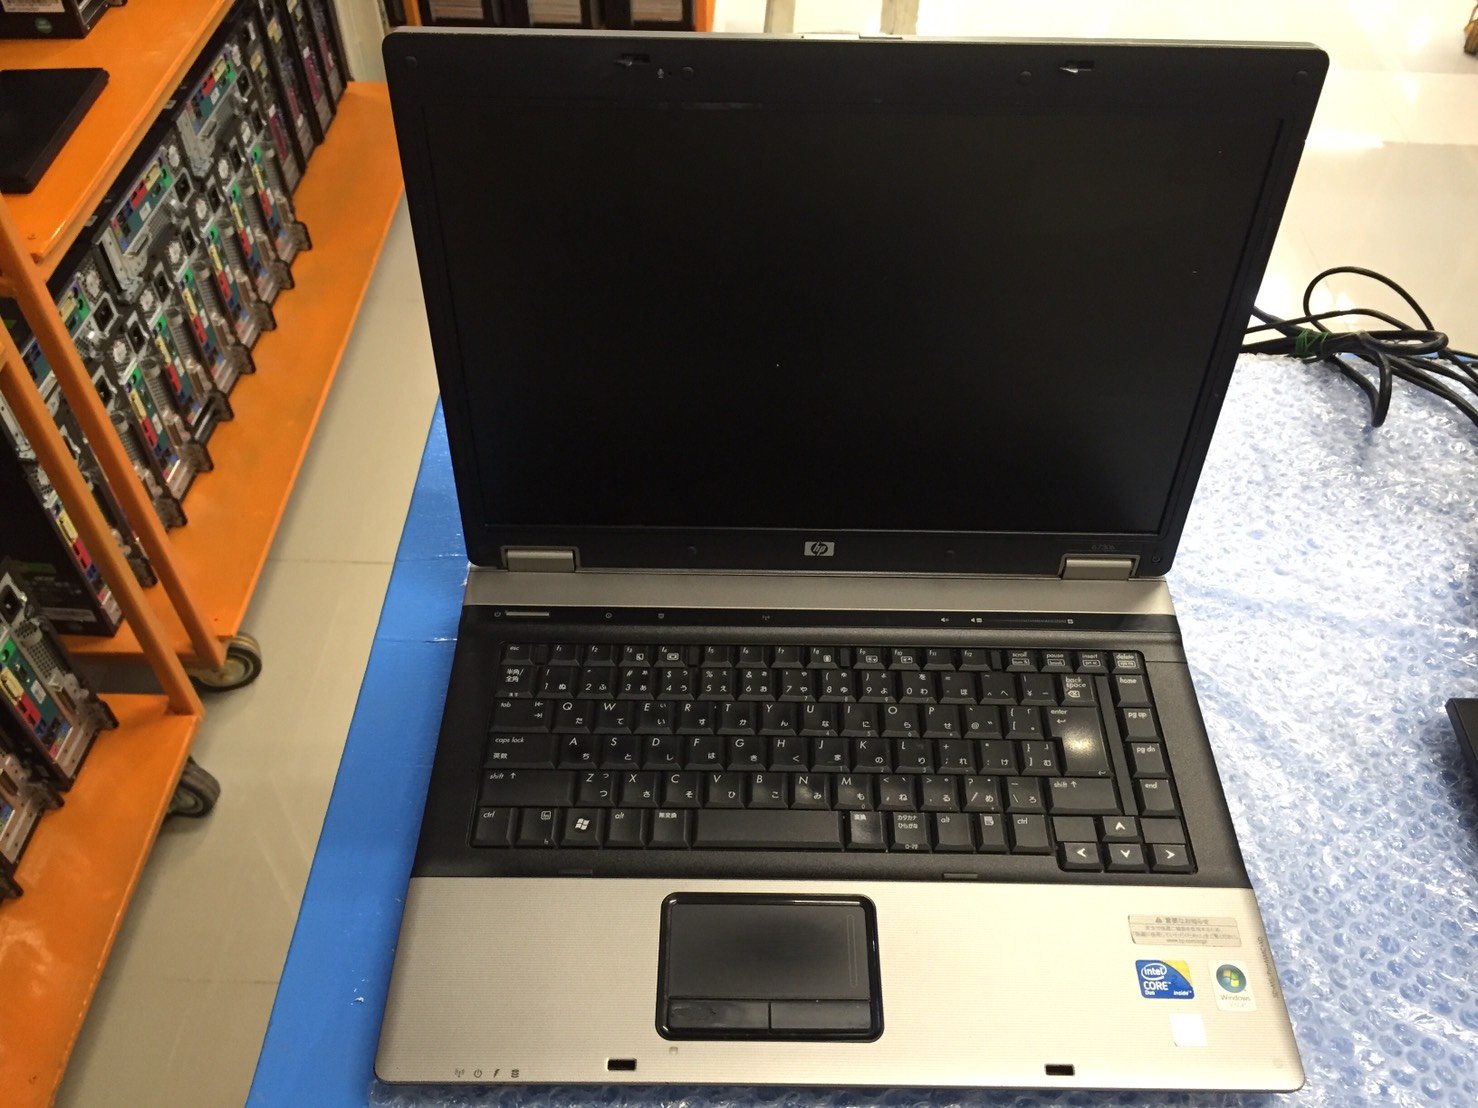 NoteBook HP 6730b Core2Duo 2.20 GHz